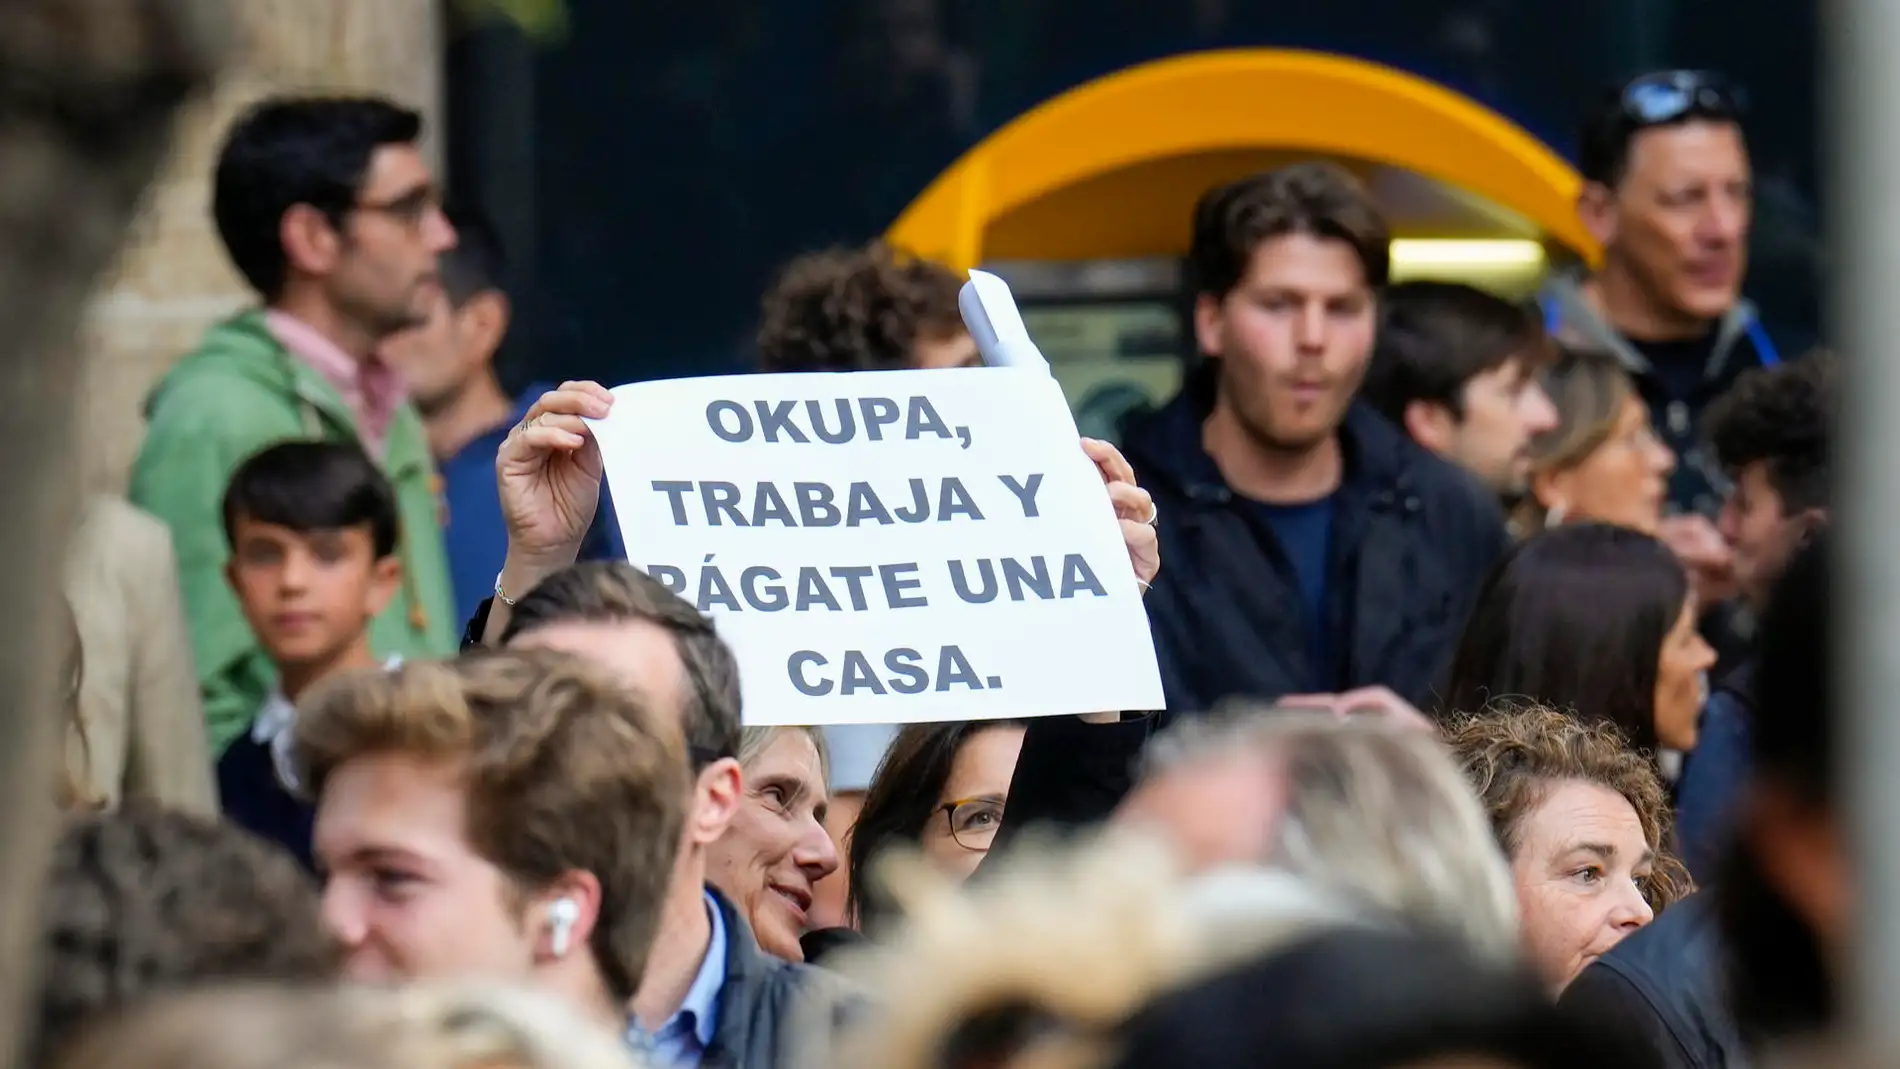 Una mujer muestra una pancarta contra las ocupaciones durante una concentración en Barcelona.